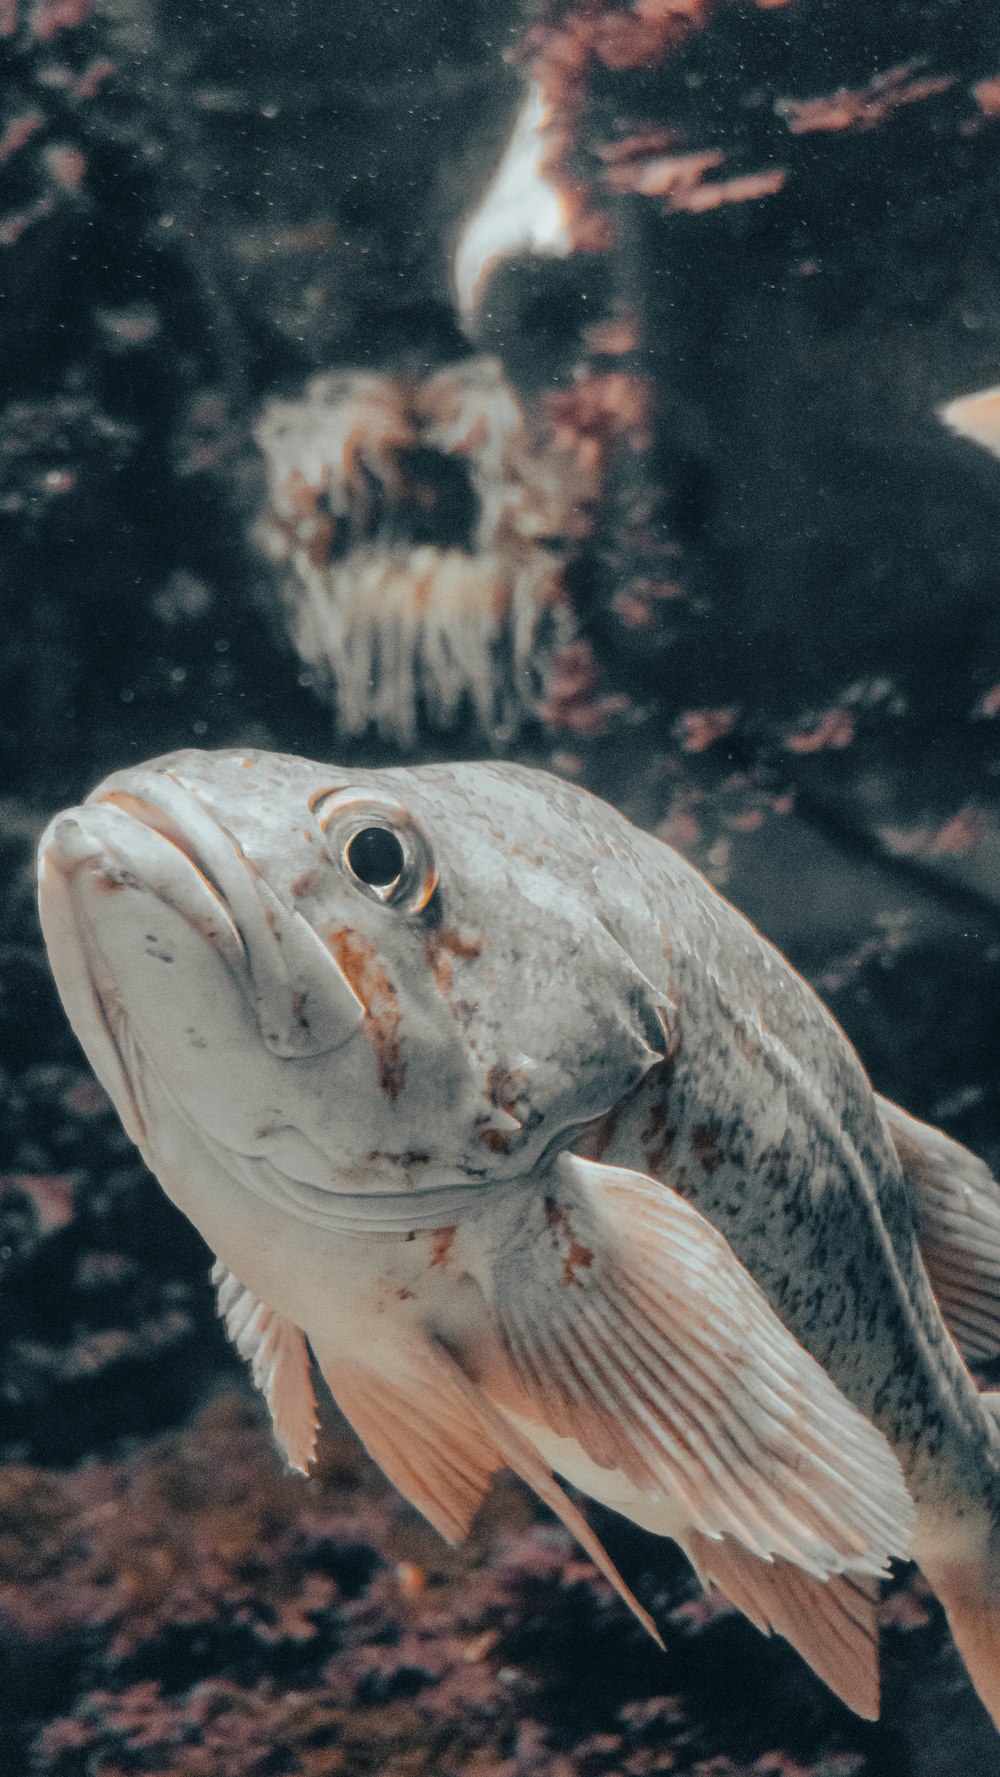 pesci grigi e bianchi nella fotografia ravvicinata